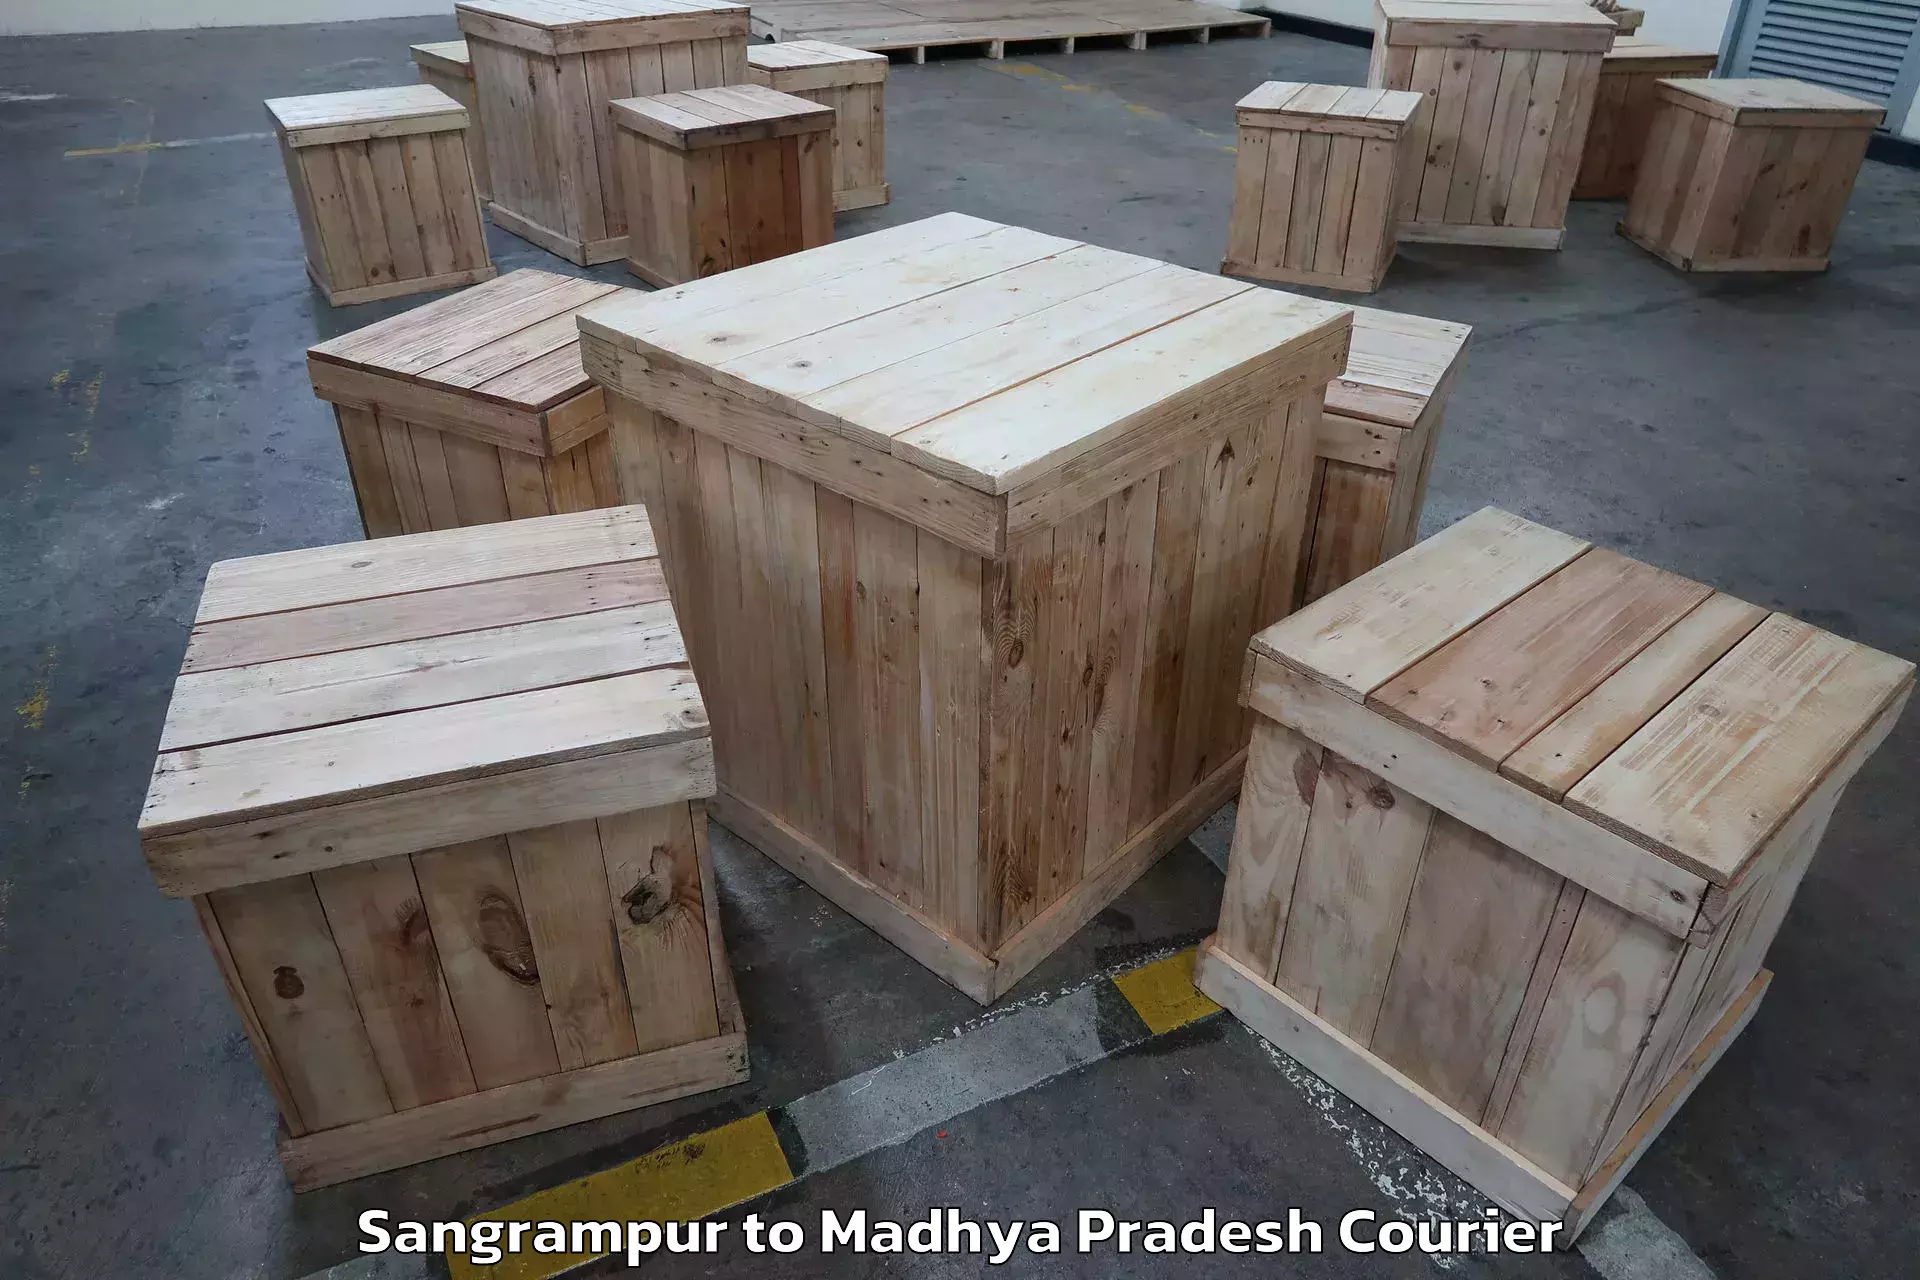 Skilled furniture transporters Sangrampur to Madhya Pradesh